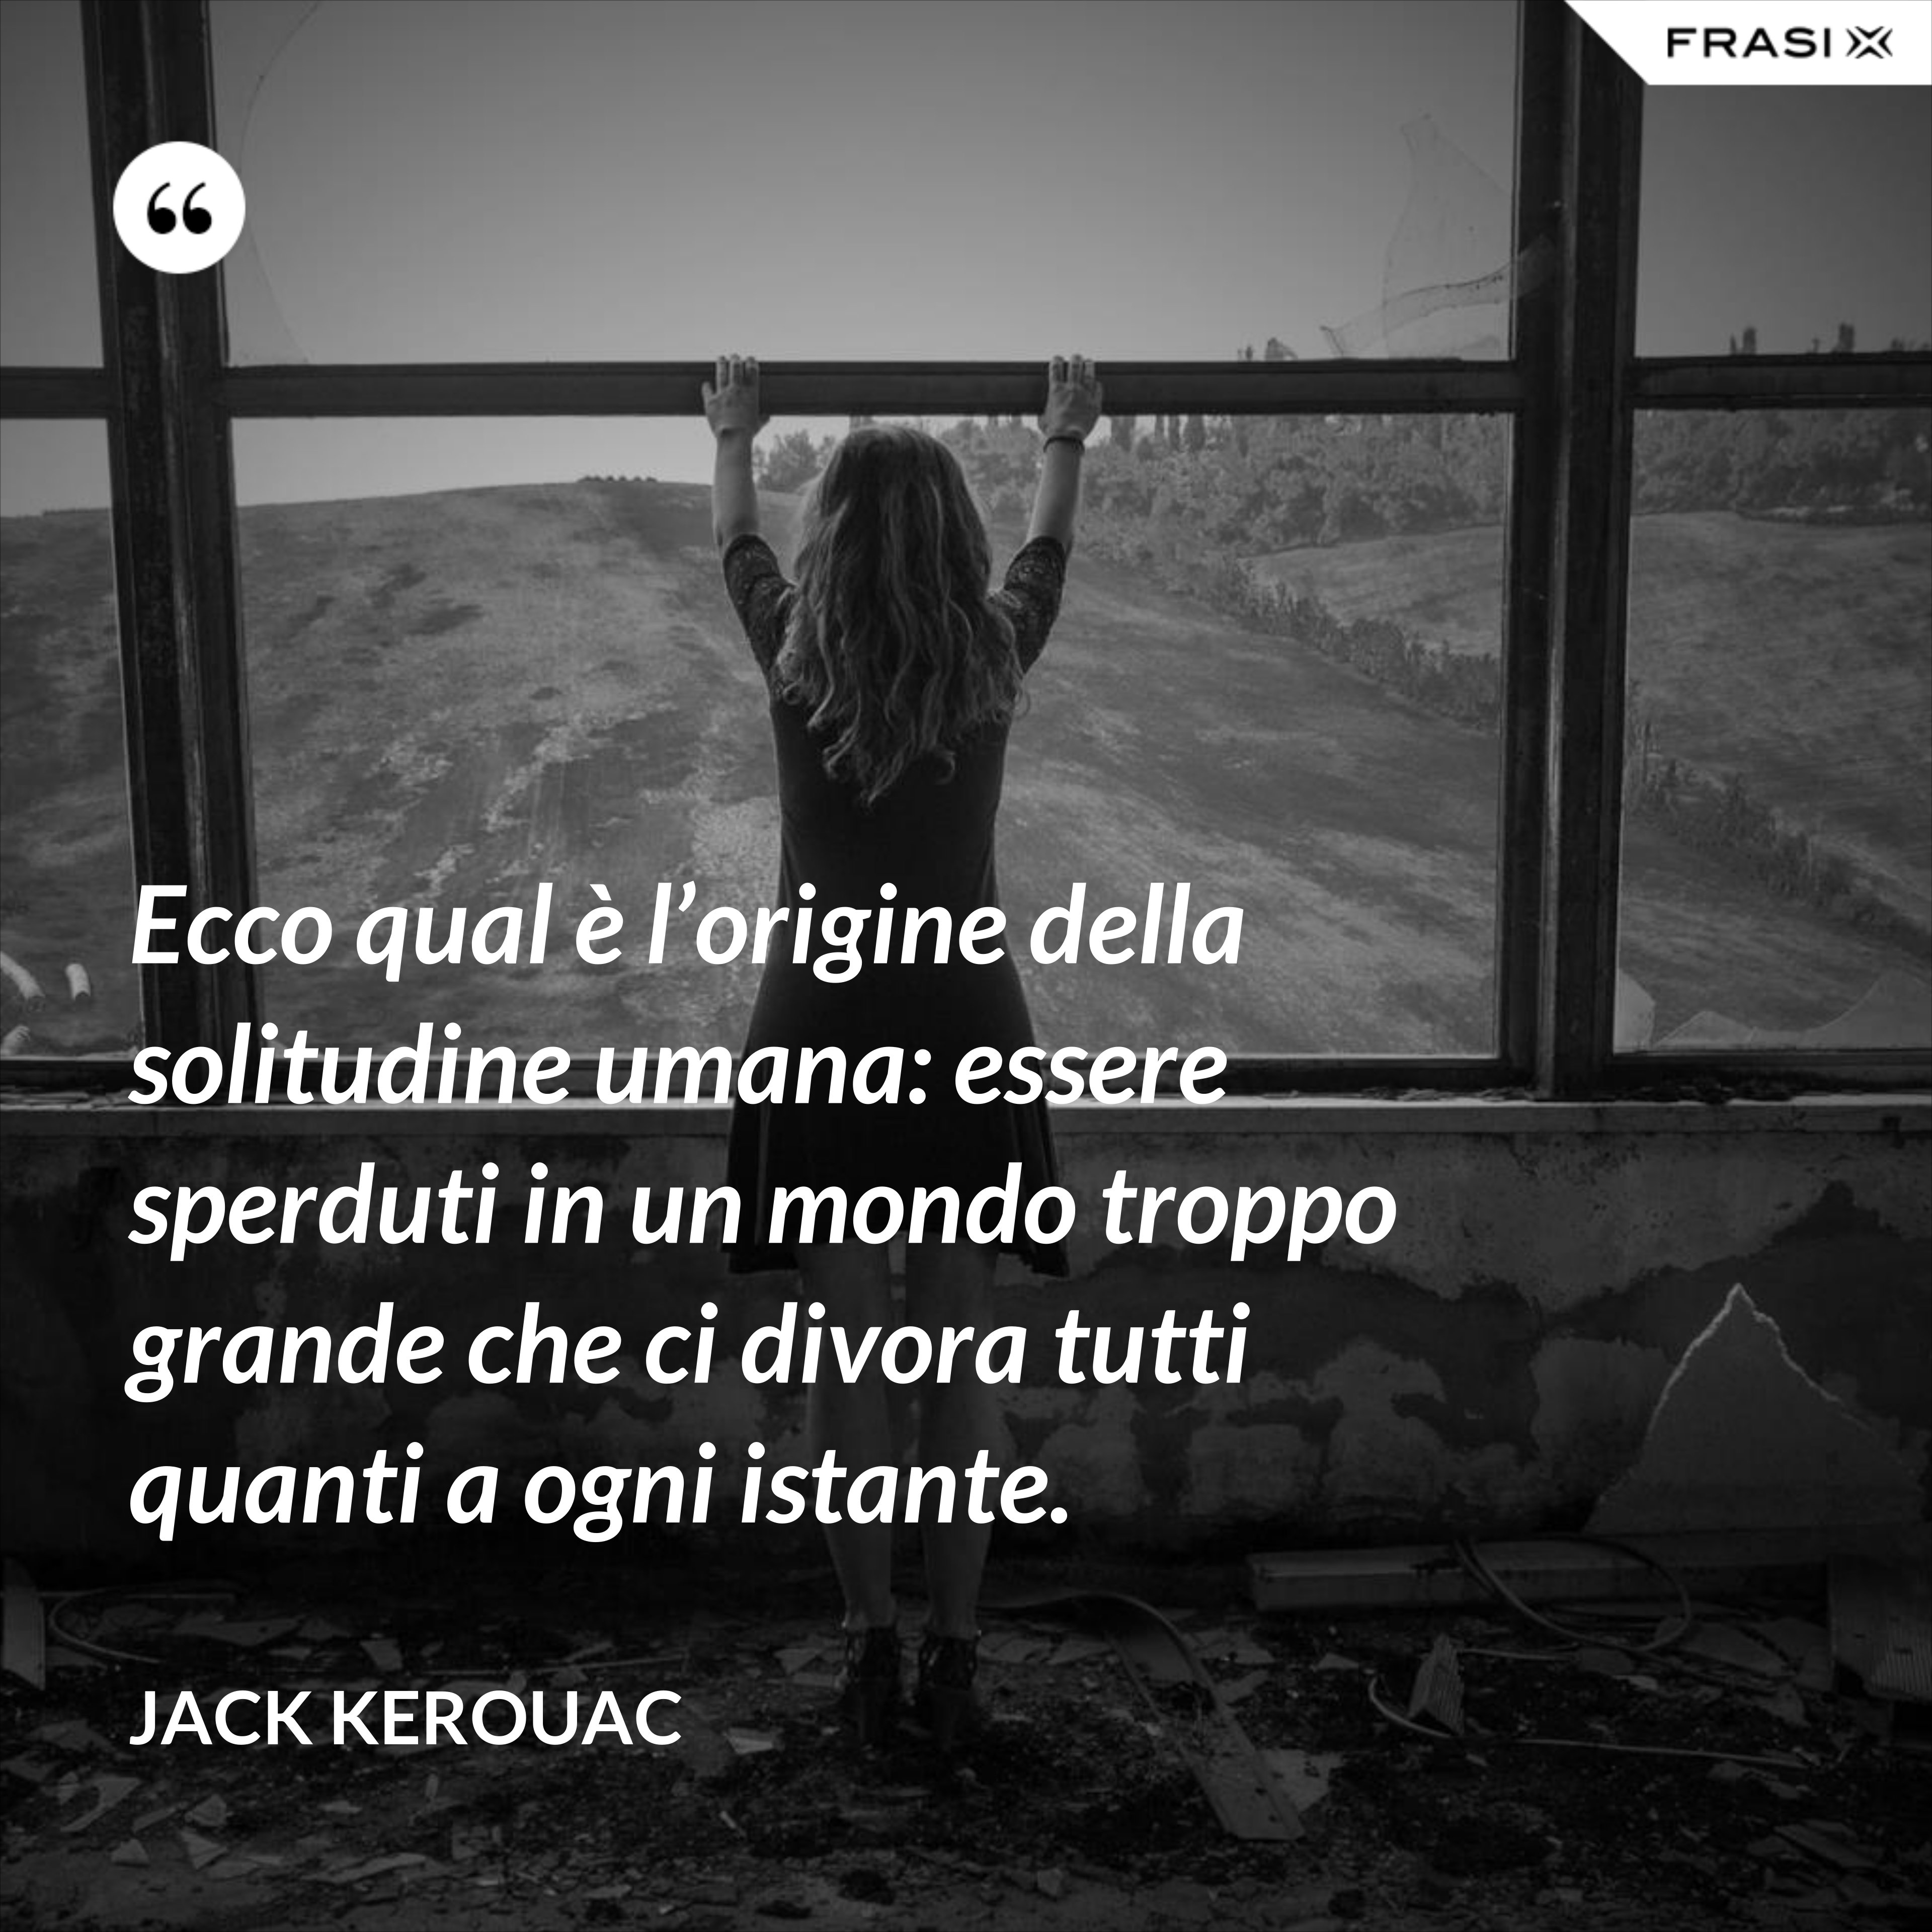 Ecco qual è l’origine della solitudine umana: essere sperduti in un mondo troppo grande che ci divora tutti quanti a ogni istante. - Jack Kerouac